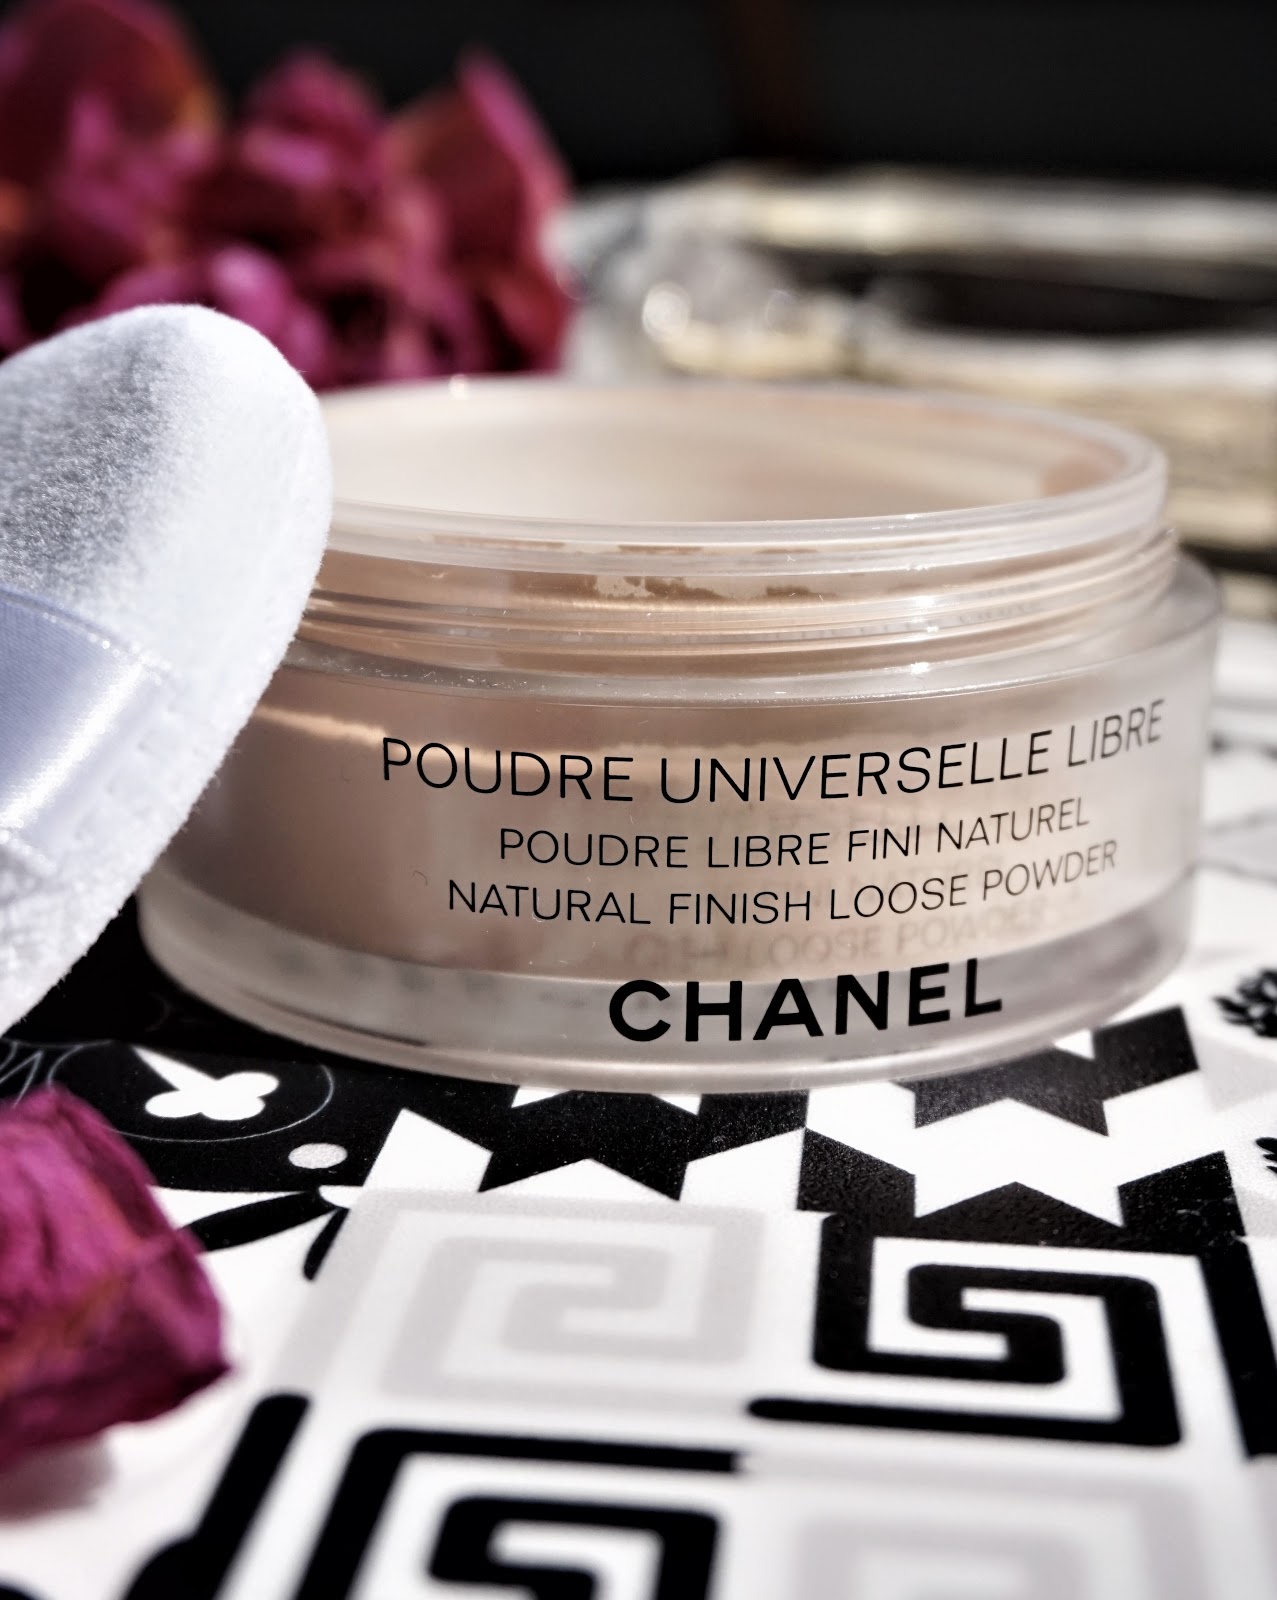 manuskript Stoop Genre La poudre universelle libre de Chanel, mon must have ! | The Mariette Blog